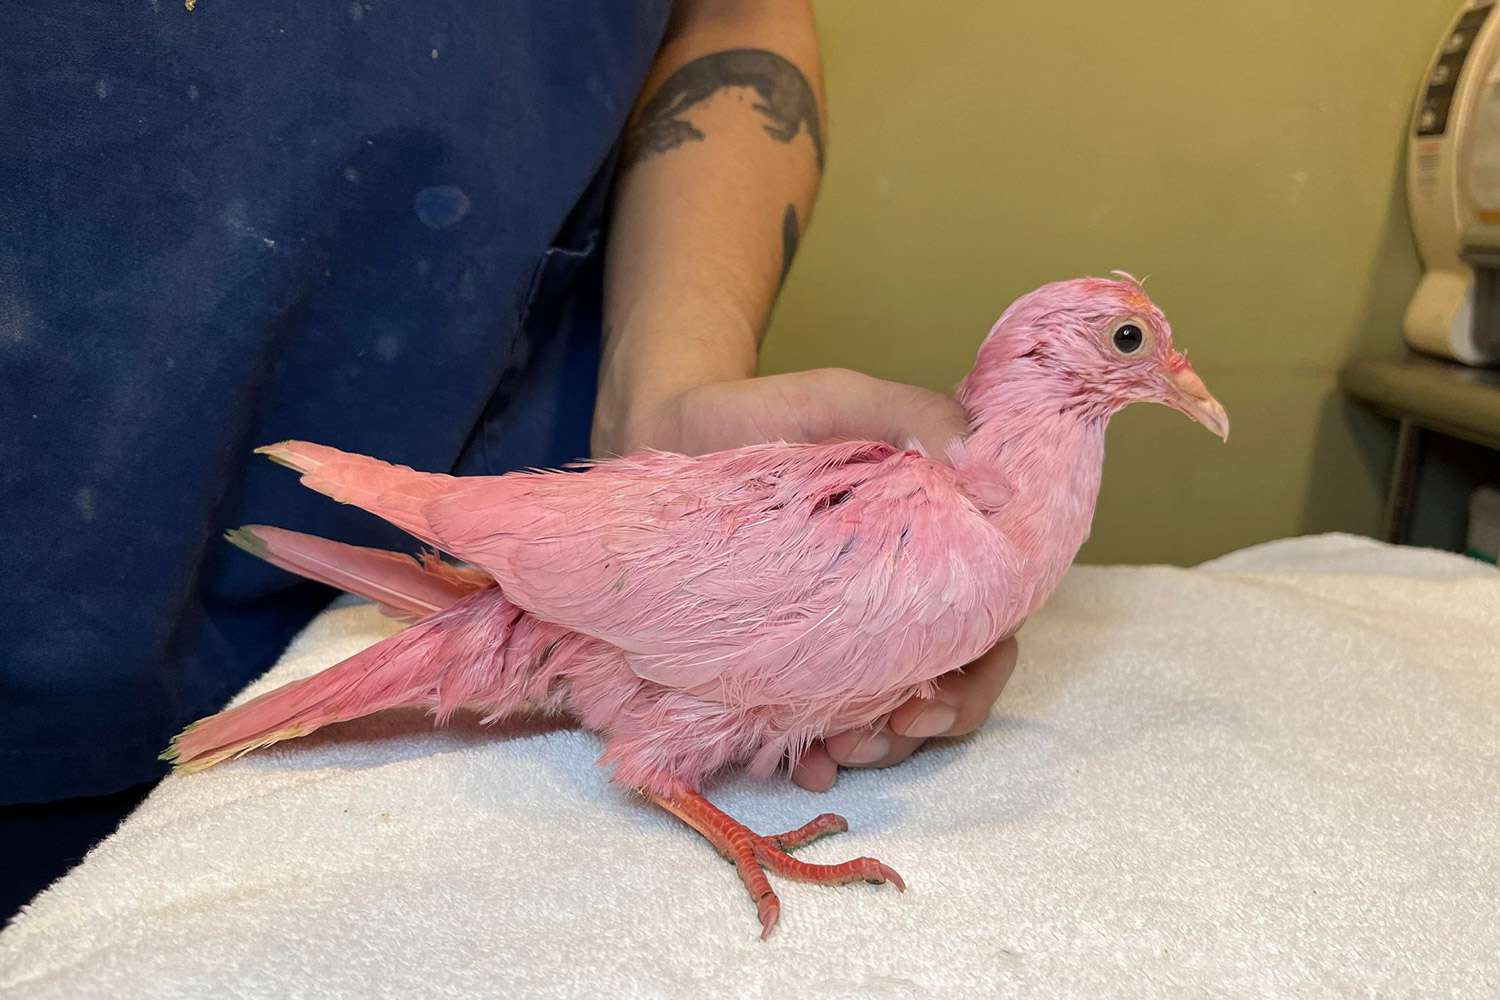 Служба спасения животных предупреждает: «Никогда не красьте птицу» после того, как «борющийся» розовый голубь был найден блуждающим по Нью-Йорку